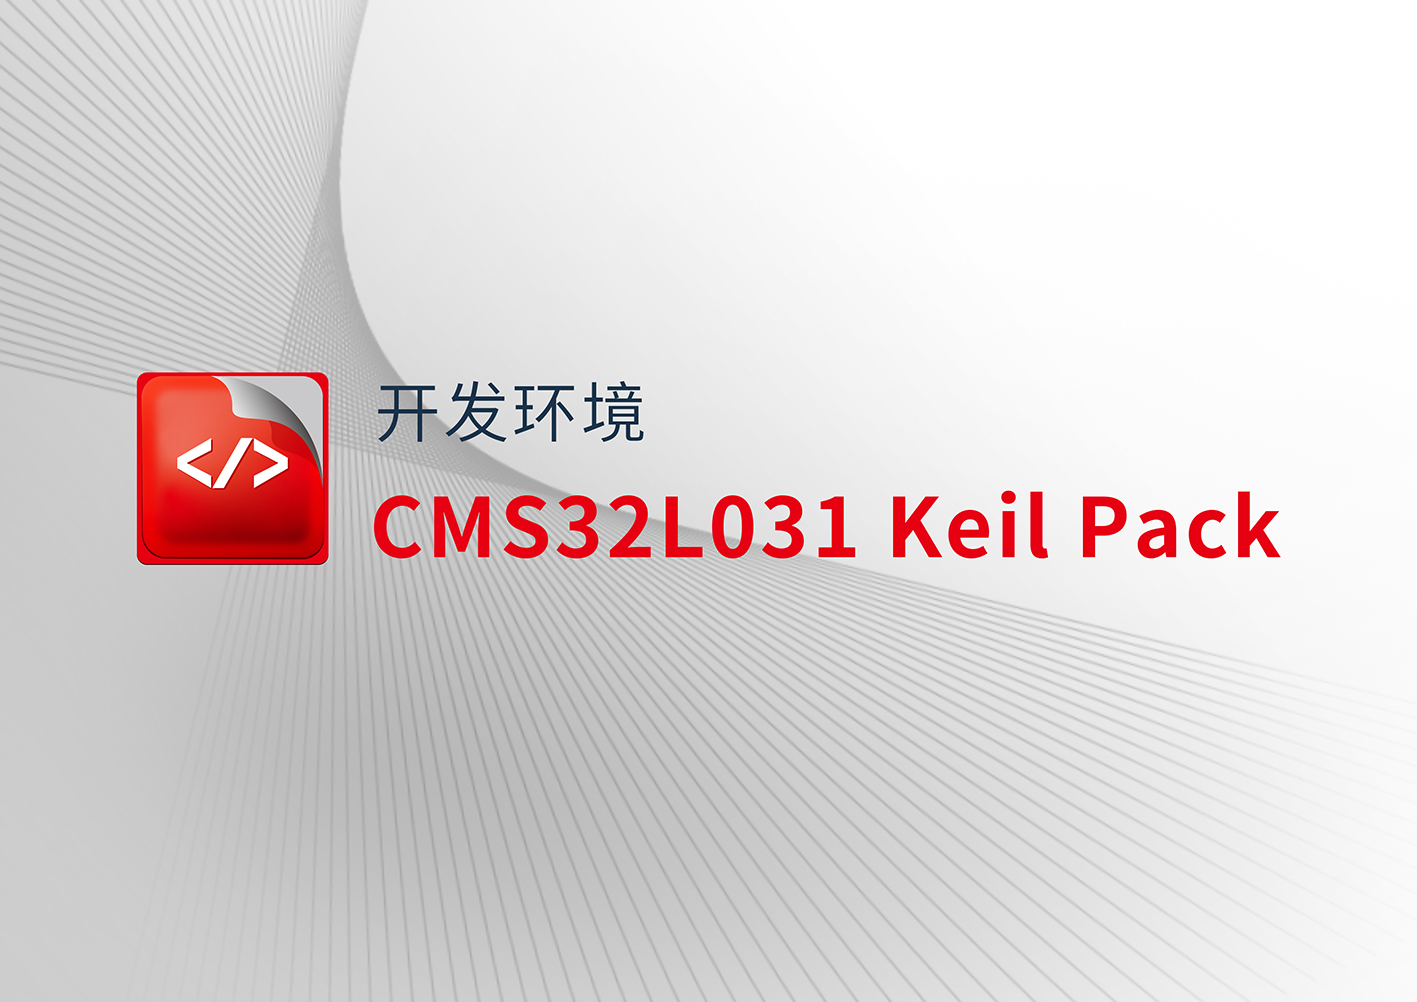 CMS32L031 Keil Pack